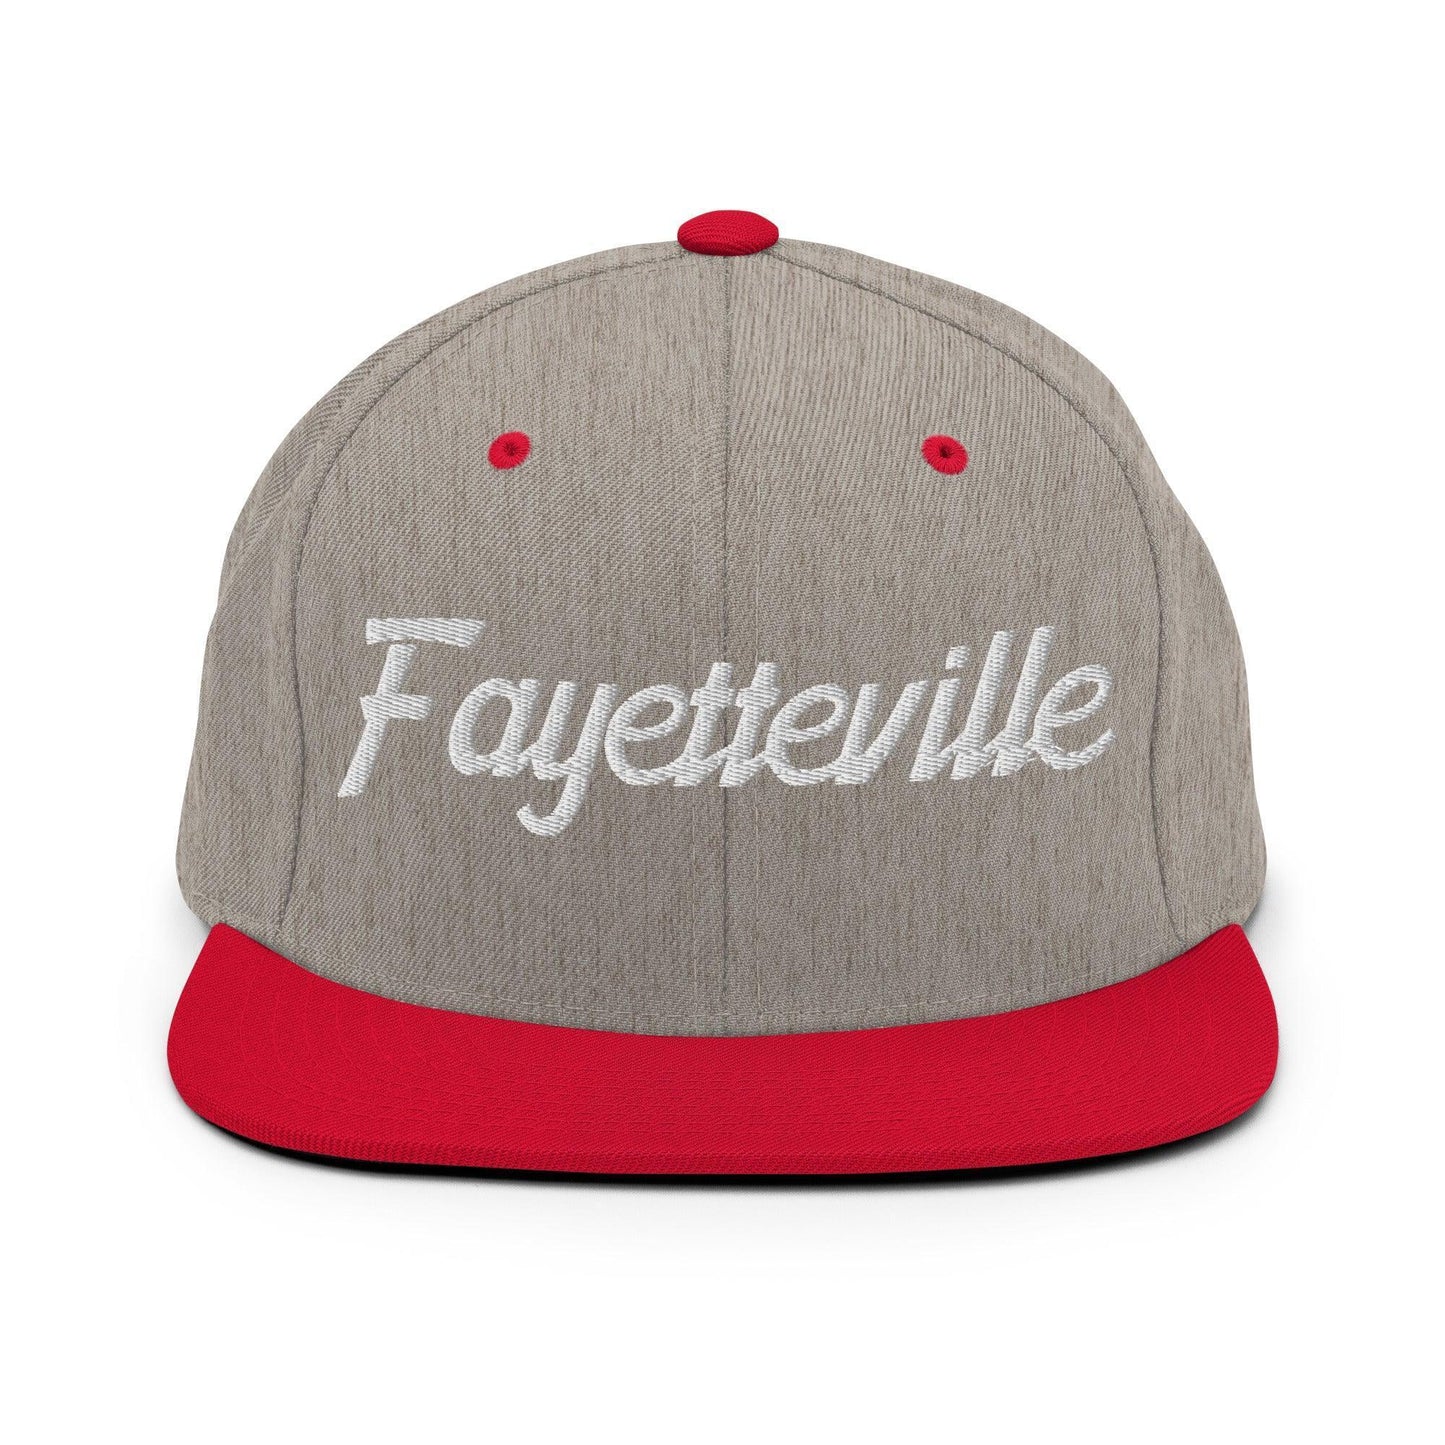 Fayetteville Script Snapback Hat Heather Grey Red